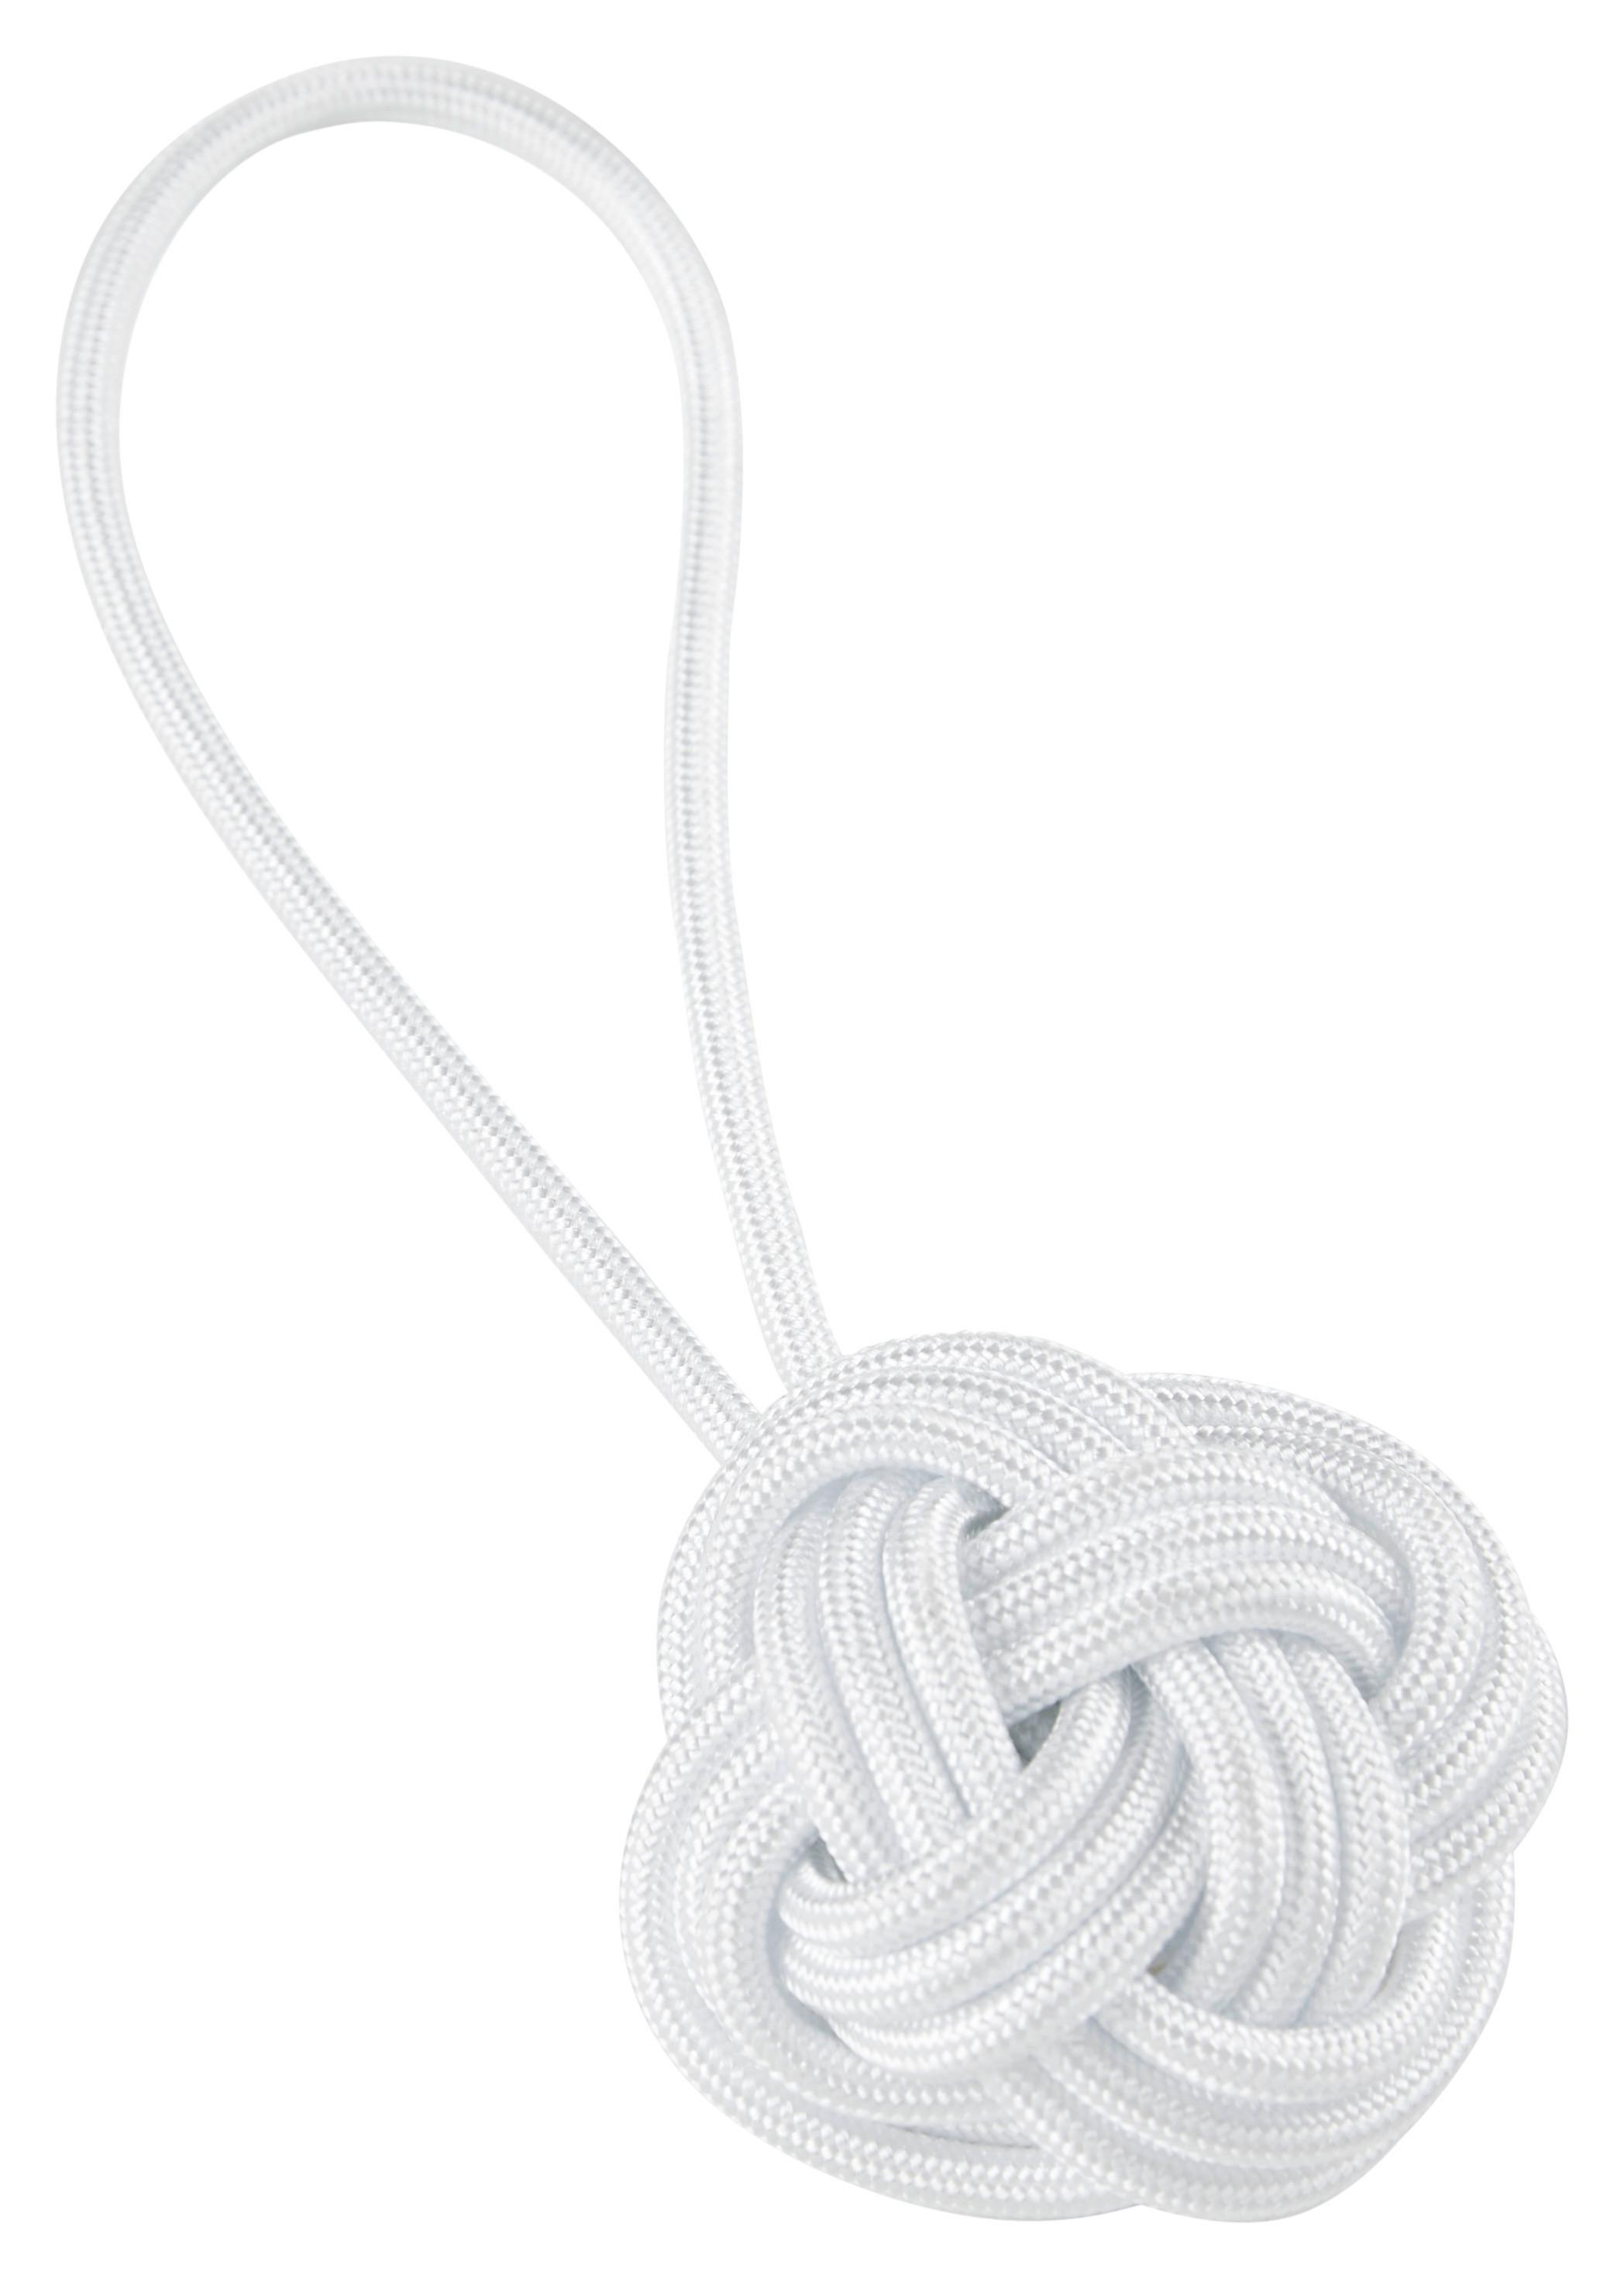 Raffhalter Knoten in Weiß - Weiß, Holz/Textil (5cm) - Based